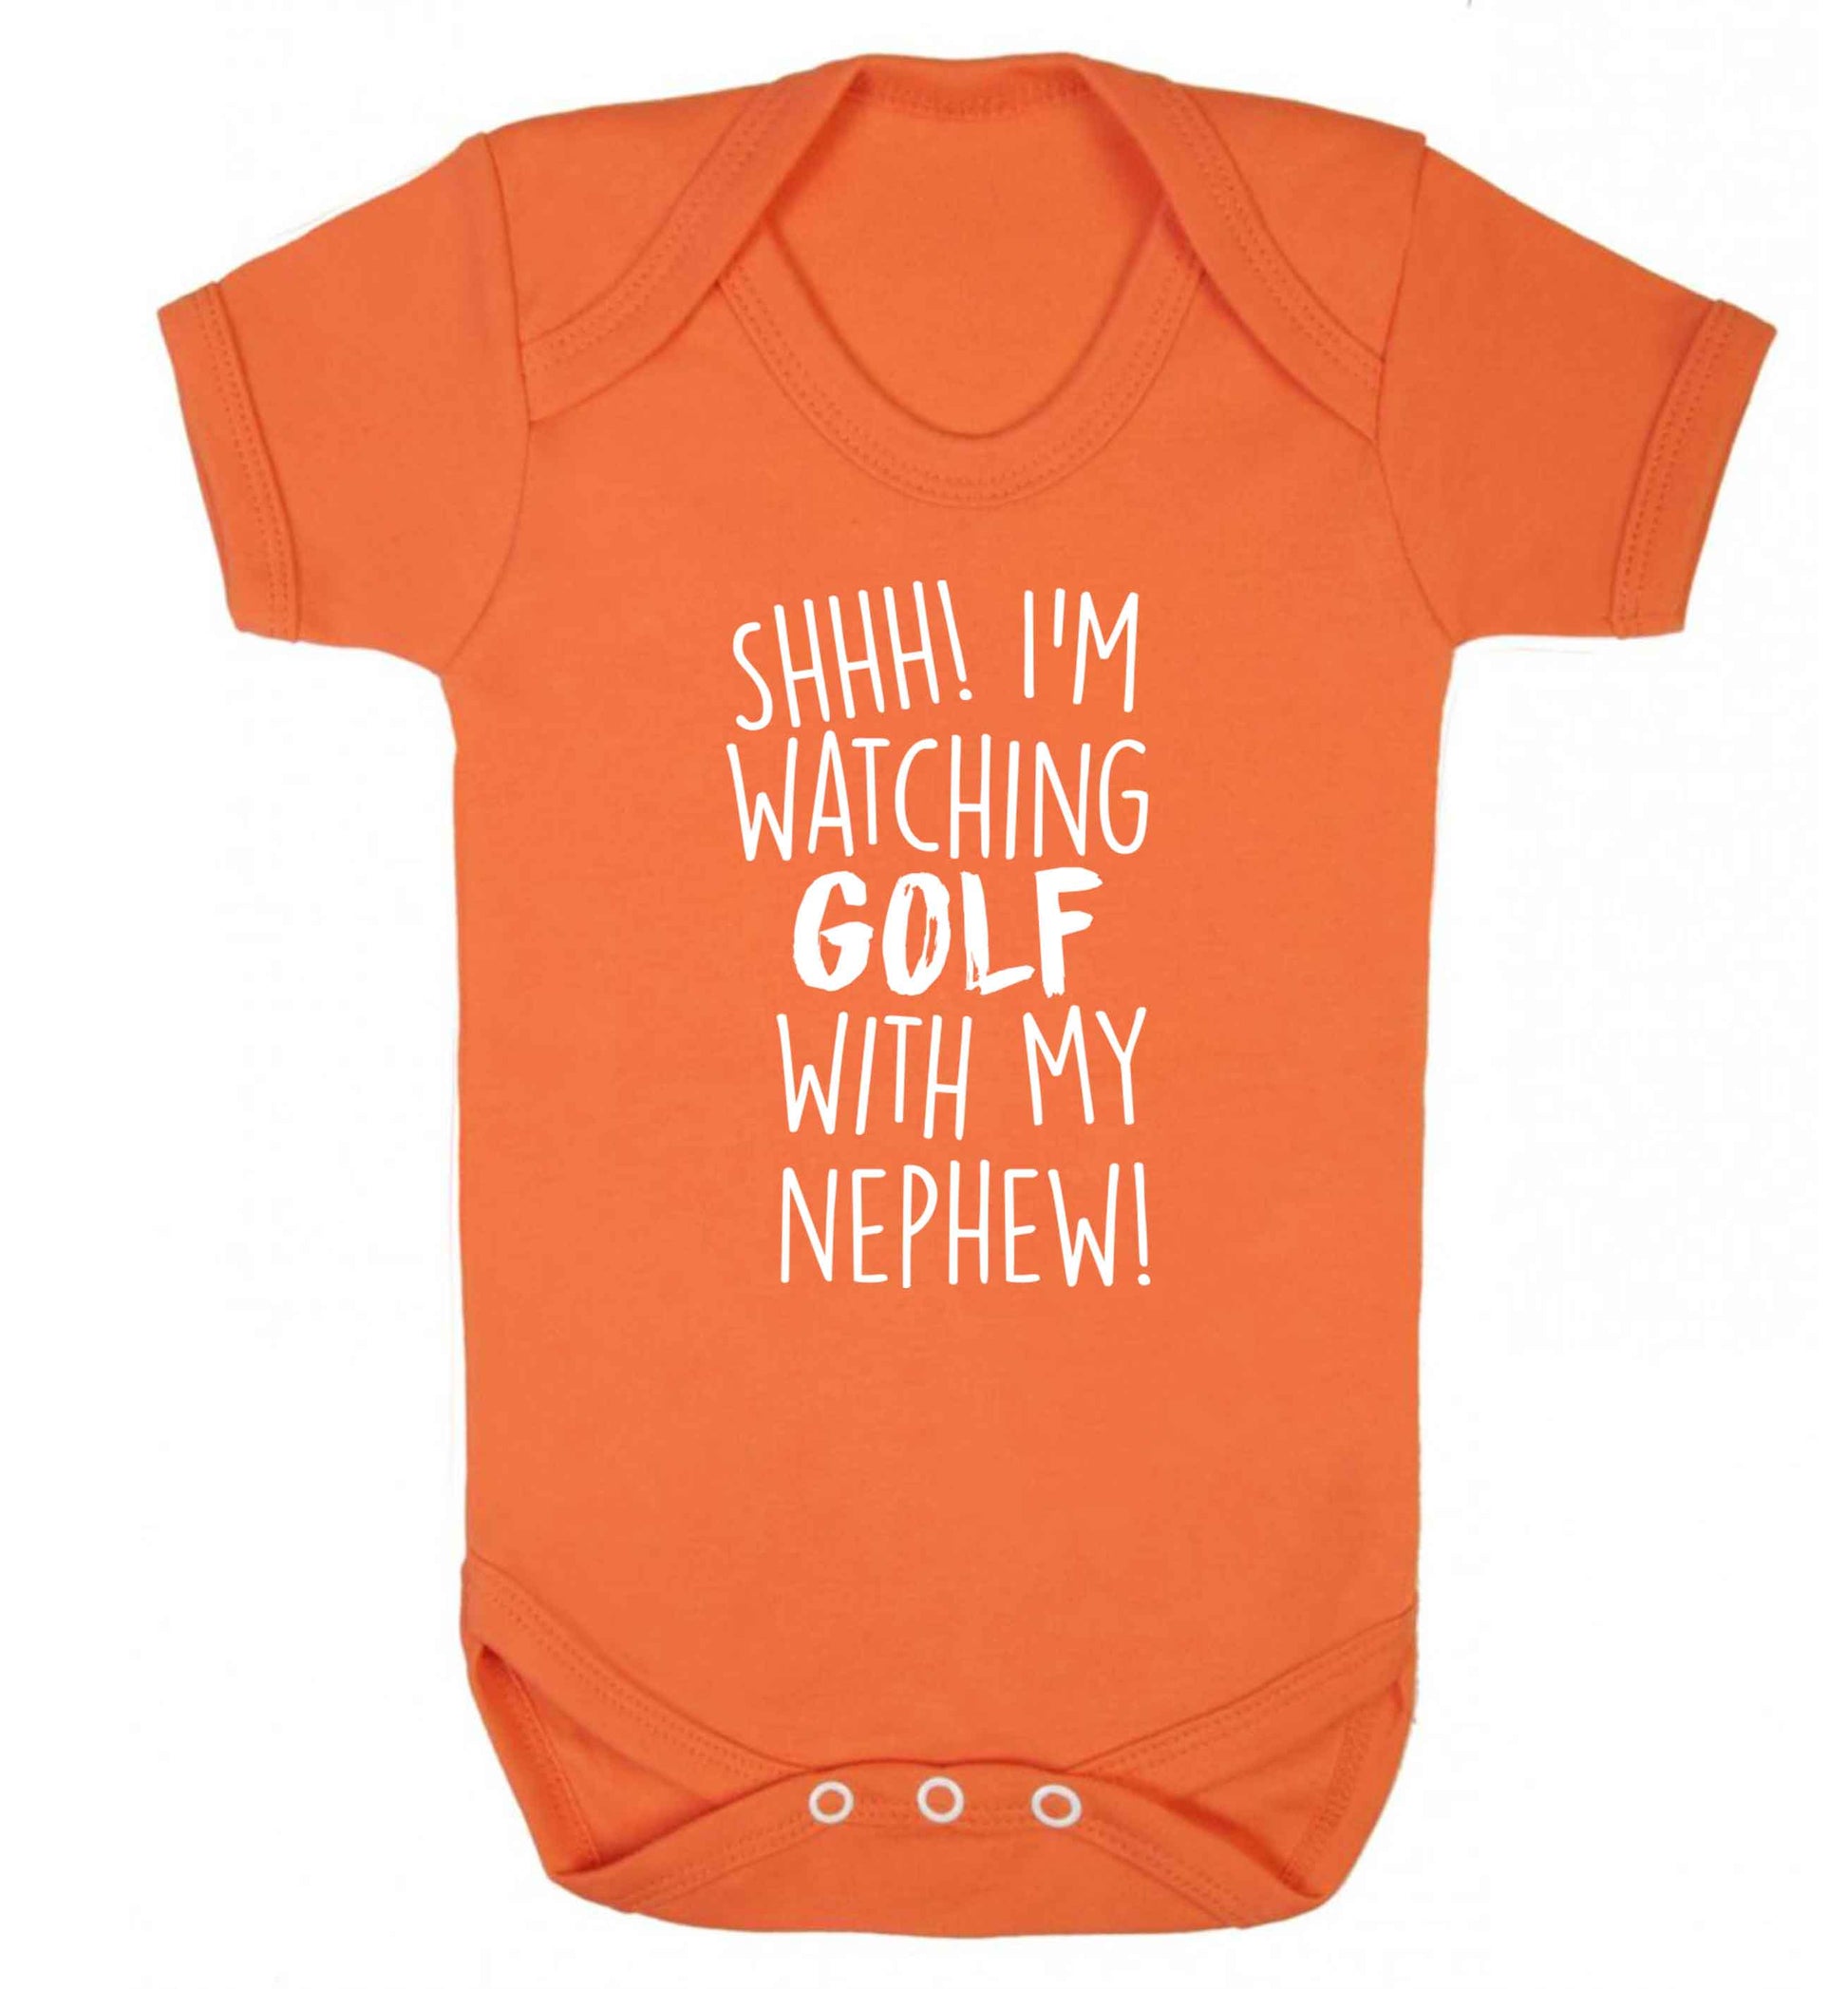 Shh I'm watching golf with my nephew Baby Vest orange 18-24 months